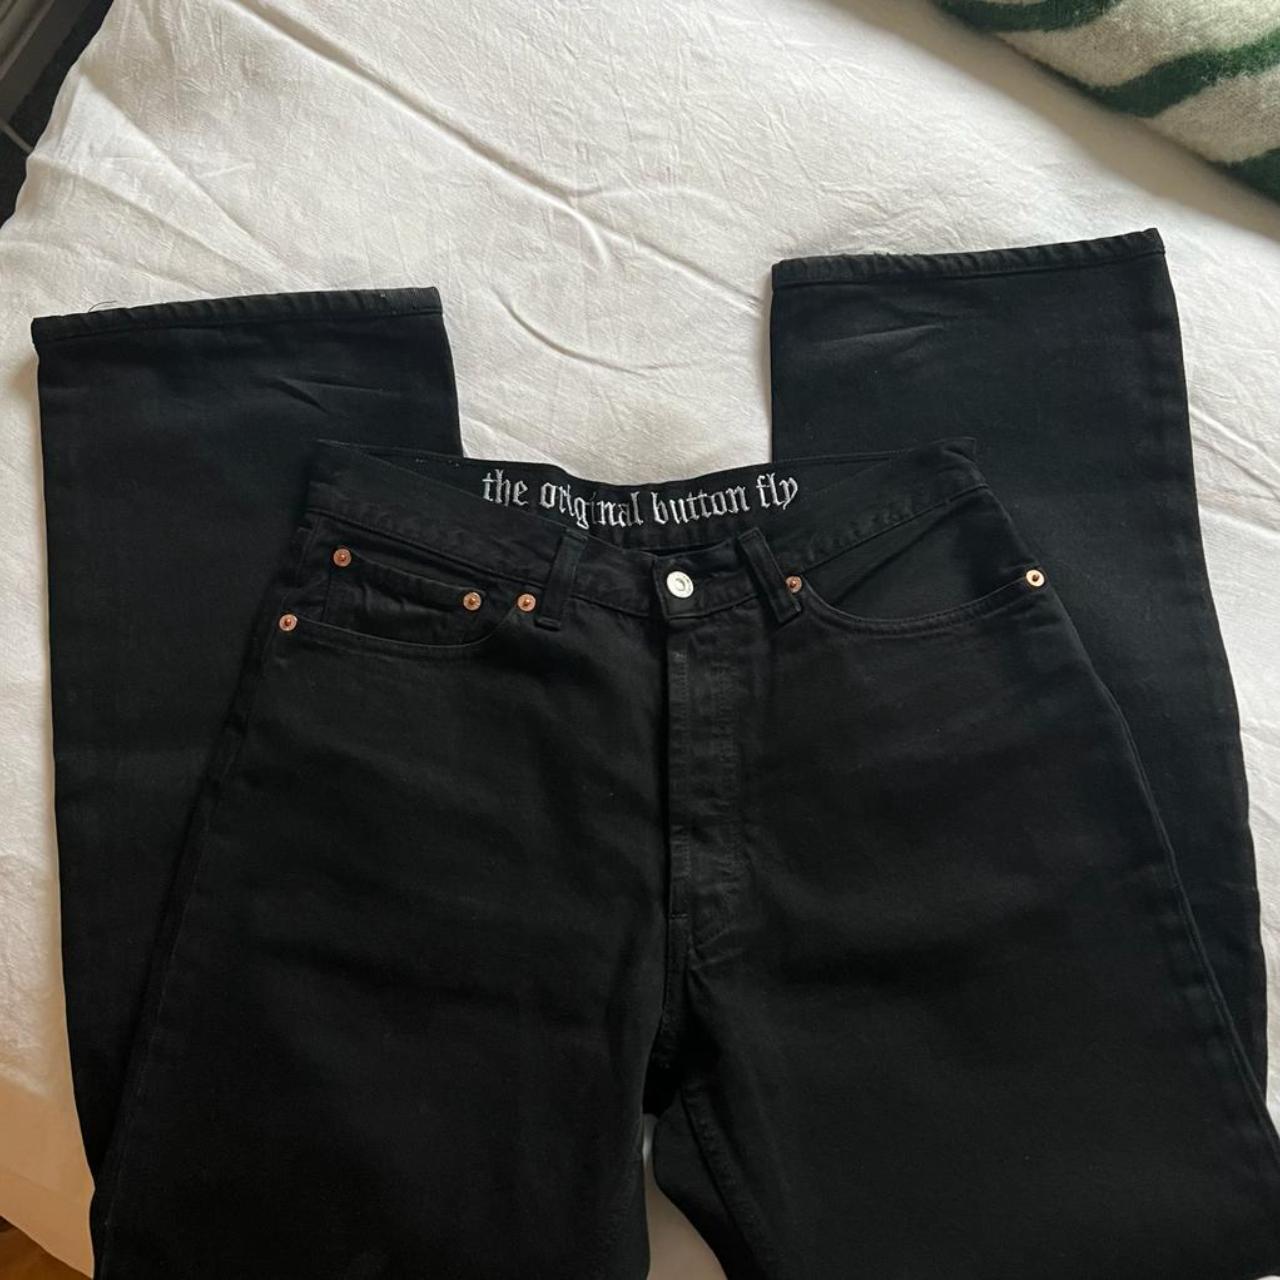 Vintage Levi's black 501 jeans Size 32w 34l - would... - Depop